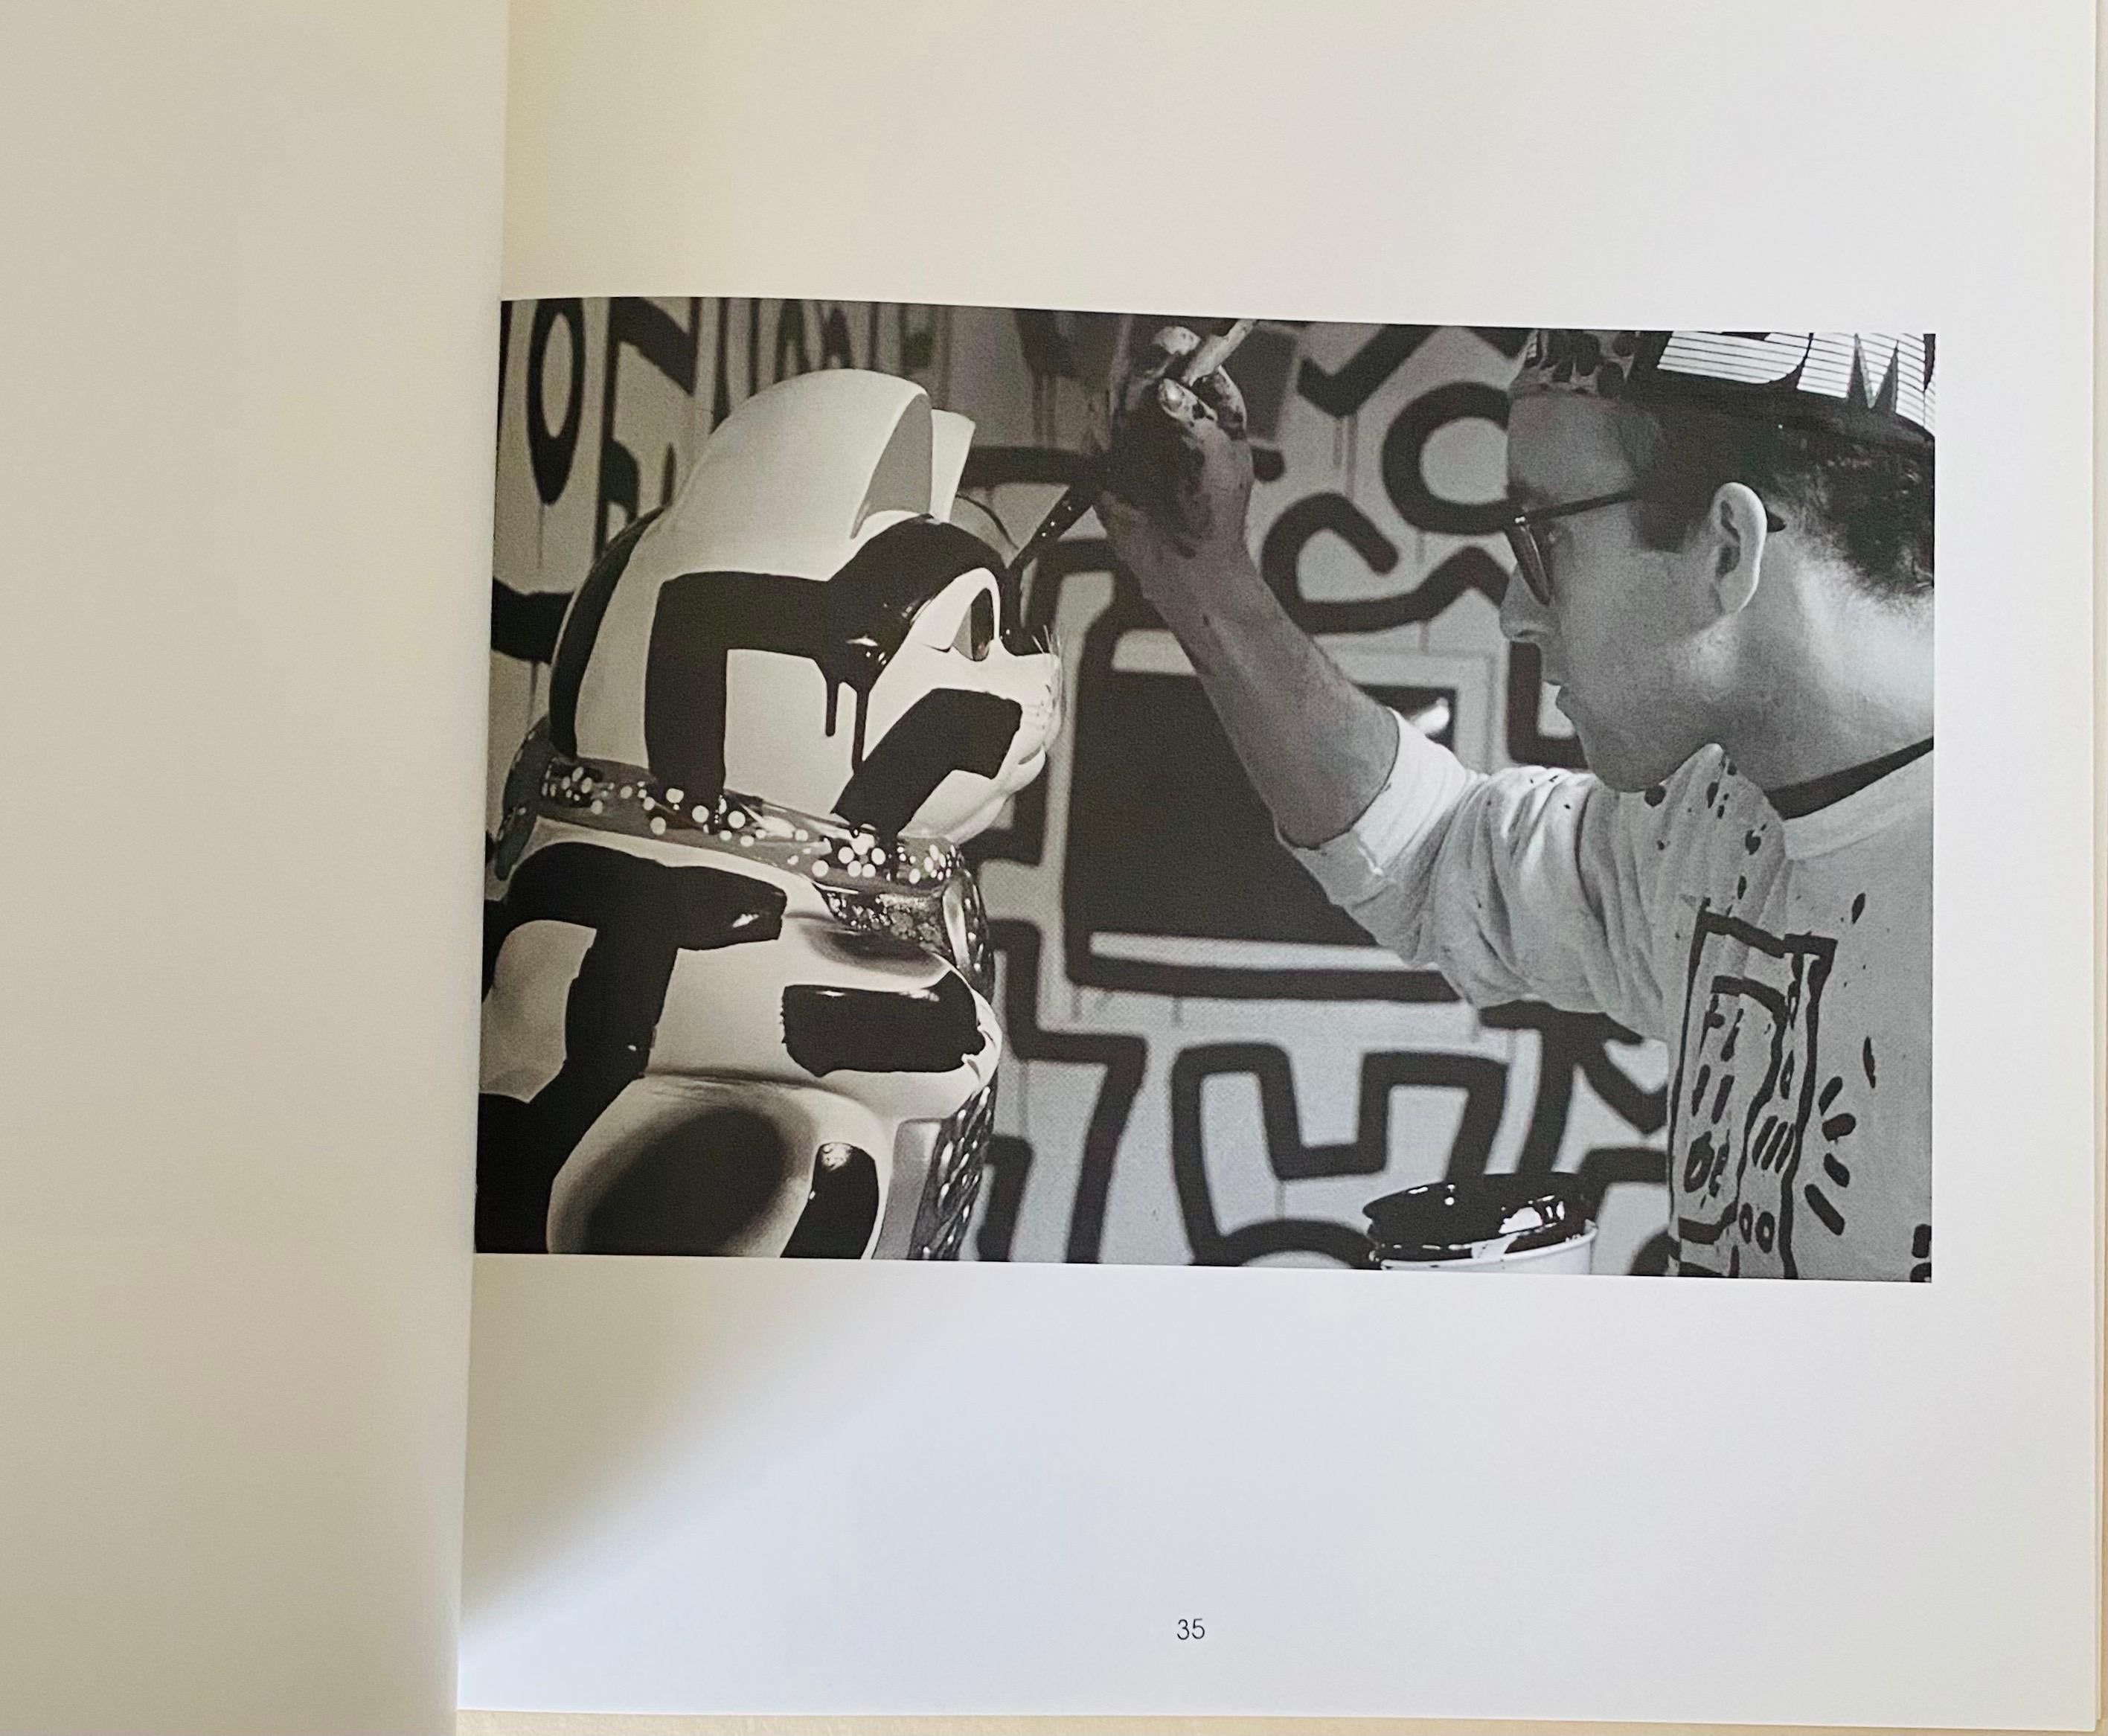 Keith Haring Pop Shop Tokyo Buch 1992:
Seltene Vintage-Monografie von Keith Haring, die die Geschichte von Keith Harings Tokyo Pop Shop gut dokumentiert; mit vielen Fotos von Harings langjährigem Freund und Mitarbeiter Tseng Kwong Chi.